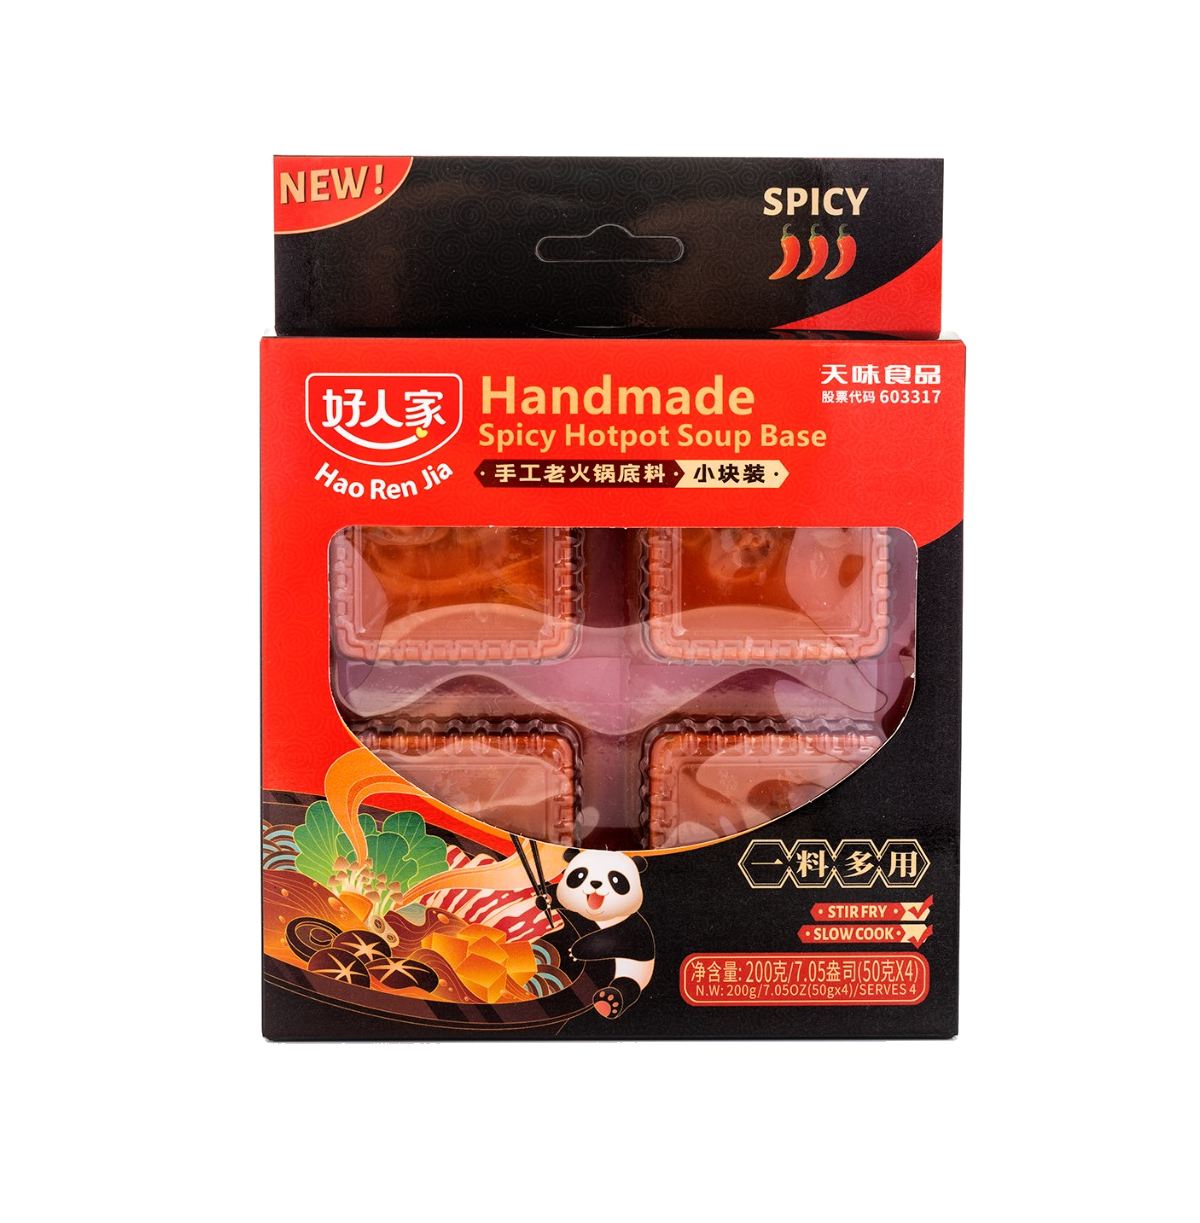 Hao Ren Jia Handmade Spicy Hot Pot Soup Base 200 g